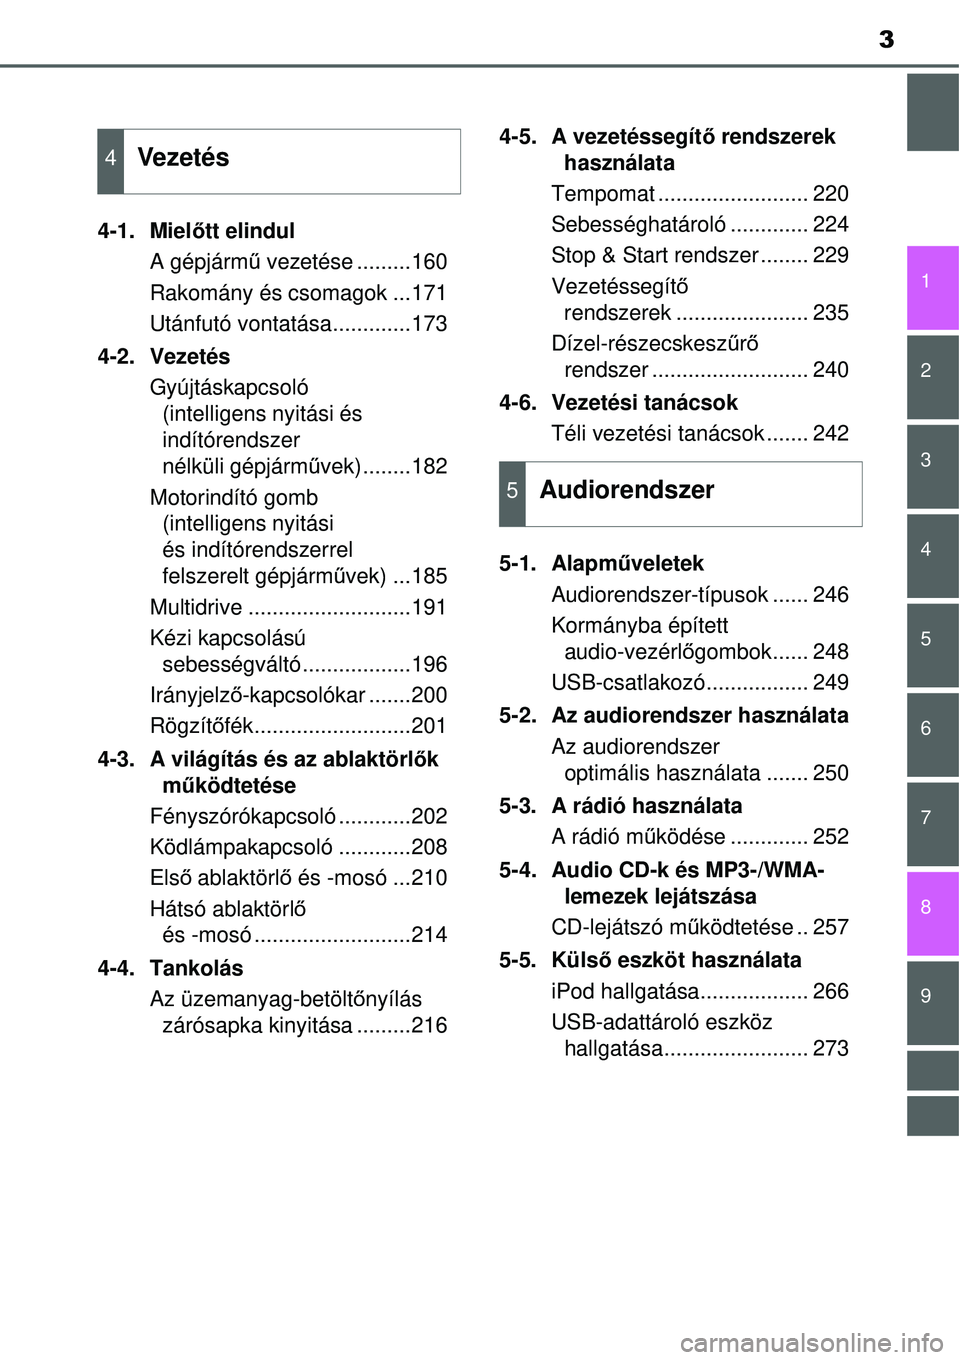 TOYOTA YARIS 2014  Kezelési útmutató (in Hungarian) 3
1
7
8 6 5
4
3
2
9
4-1. Mielőtt elindul
A gépjármű vezetése .........160
Rakomány és csomagok ...171
Utánfutó vontatása.............173
4-2. Vezetés
Gyújtáskapcsoló 
(intelligens nyitá